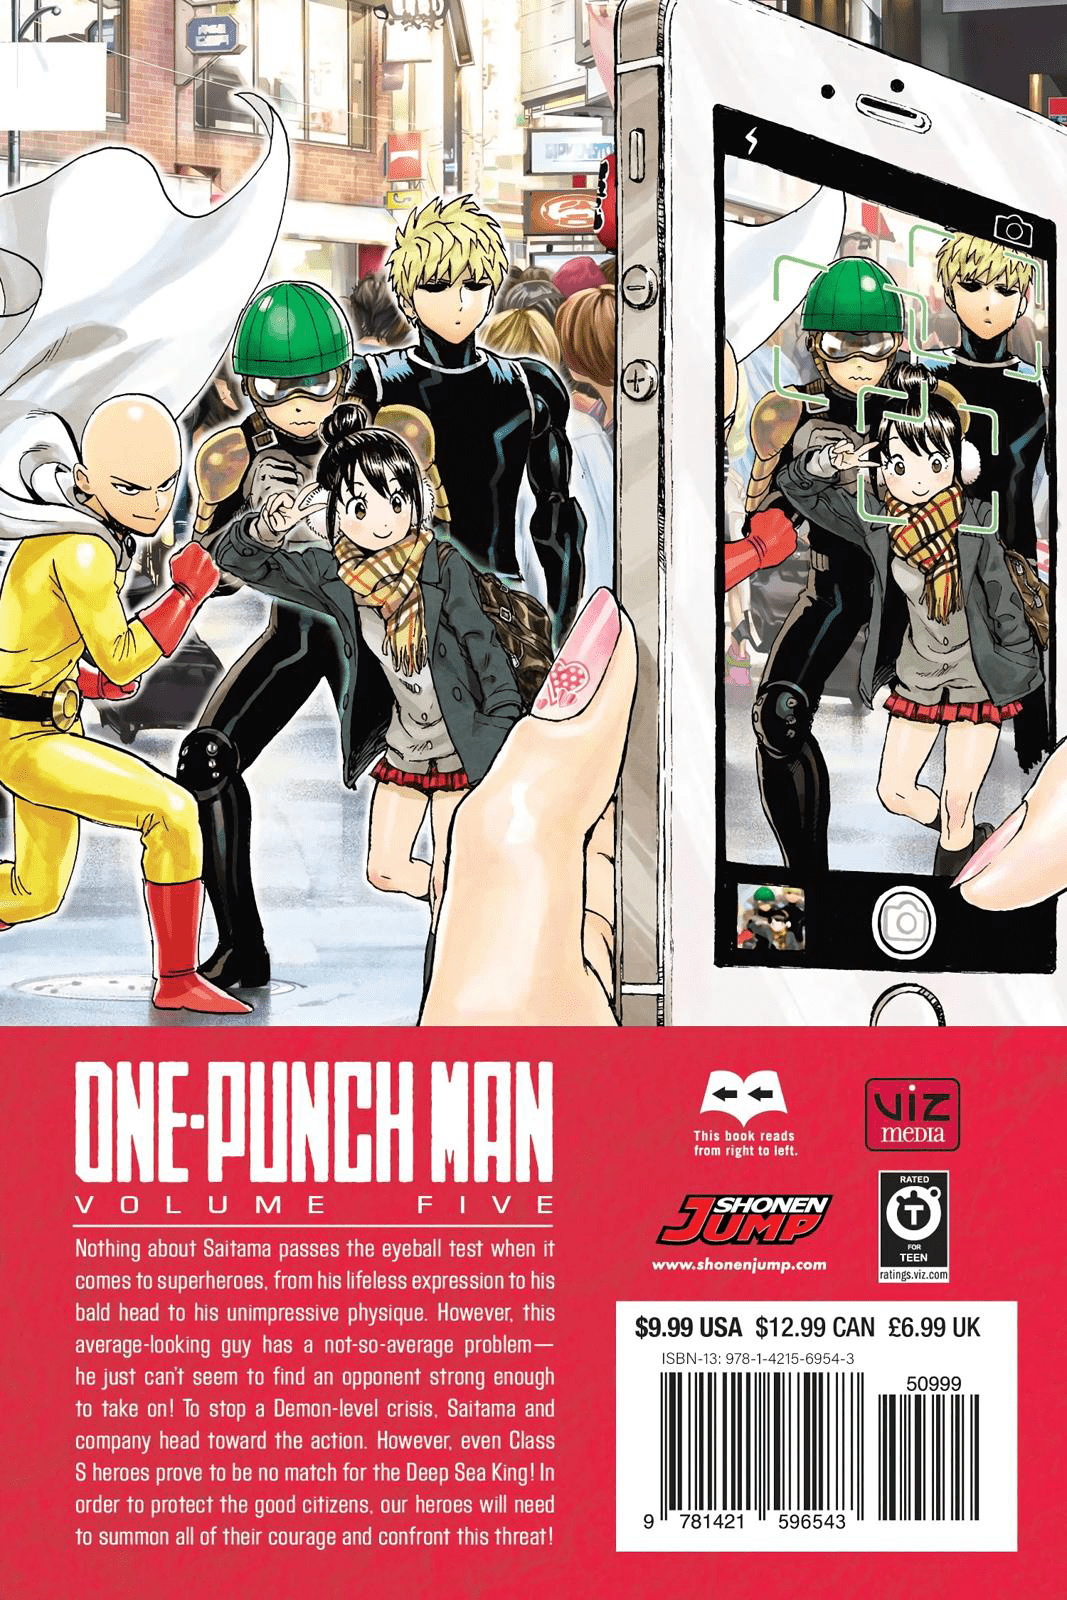 Volume 5 One Punch Man Wiki Fandom